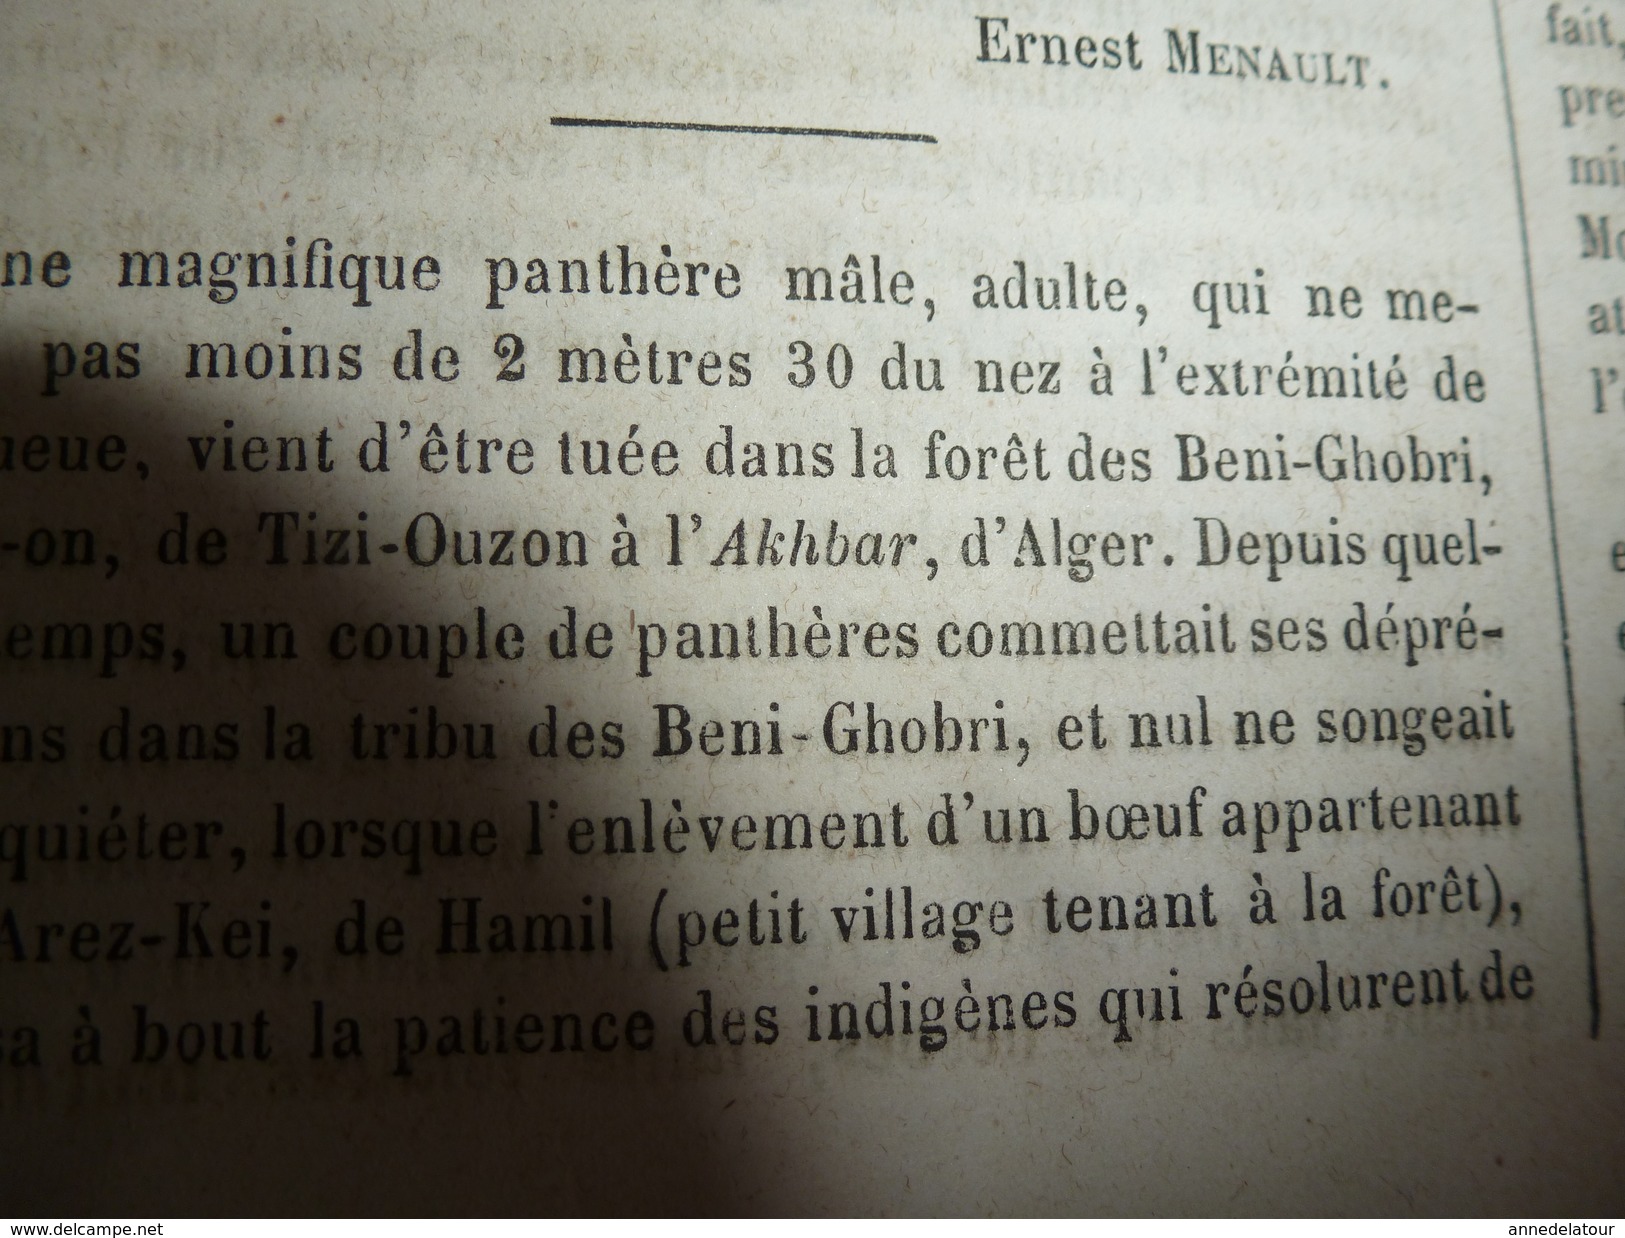 1864  Les pieds chinois; La place aux lapins:Tribu des Béni-Ghobri;Panthère à Tizi-Ouzon ? ou Tizi-Ouzou (Algérie) ; etc